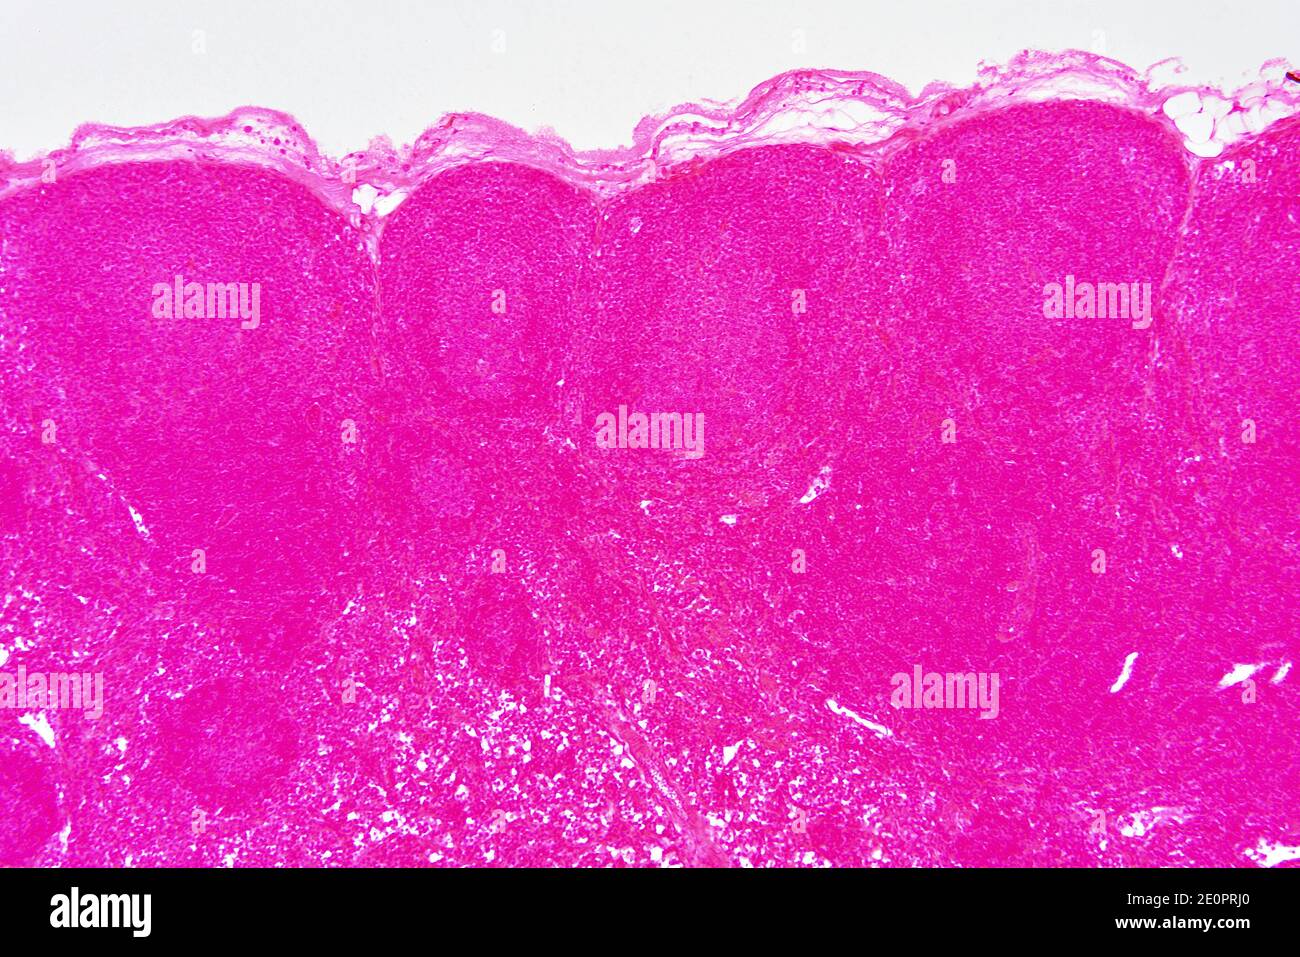 Linfonodo o ghiandola linfonodale con capsula, nodulo linfoide e trabecole. Fotomicrografo X75 con larghezza di 10 cm. Foto Stock